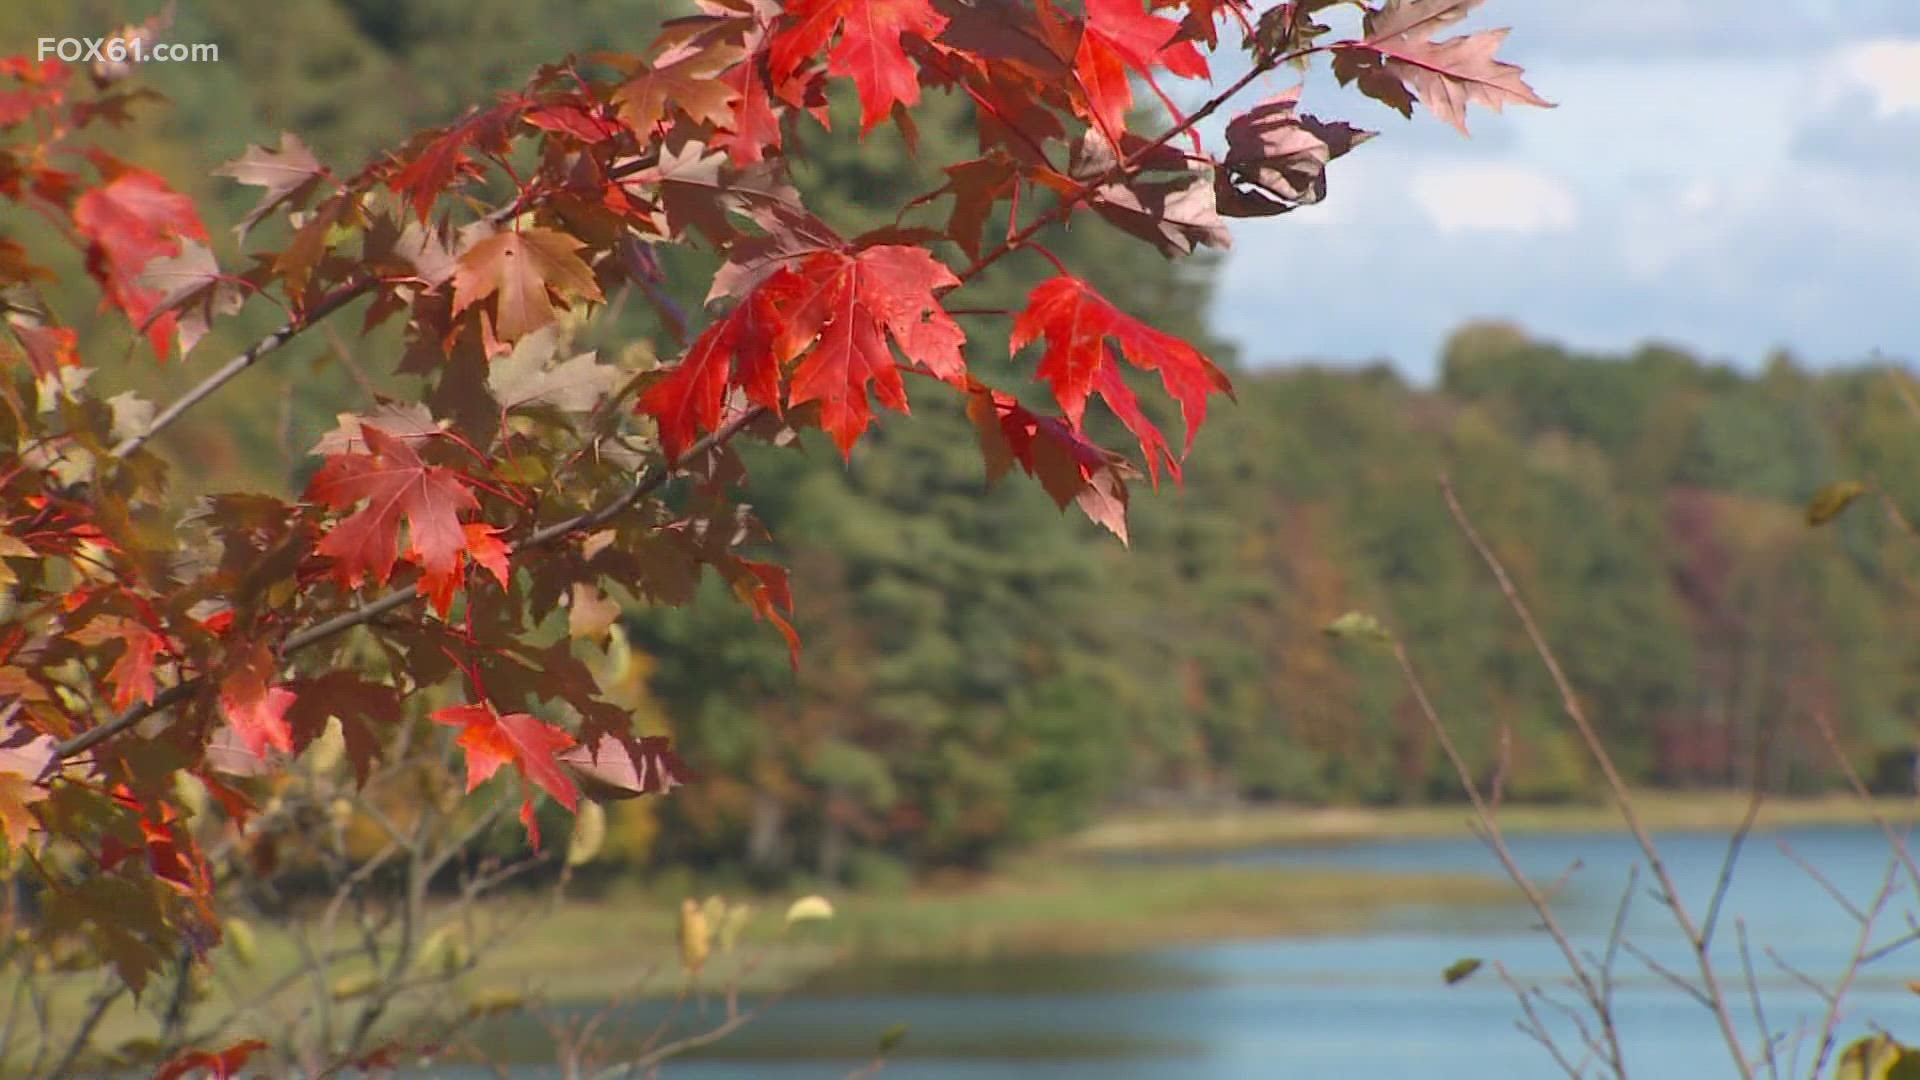 树叶变色的三个主要驱动因素是日光、低温和降水。